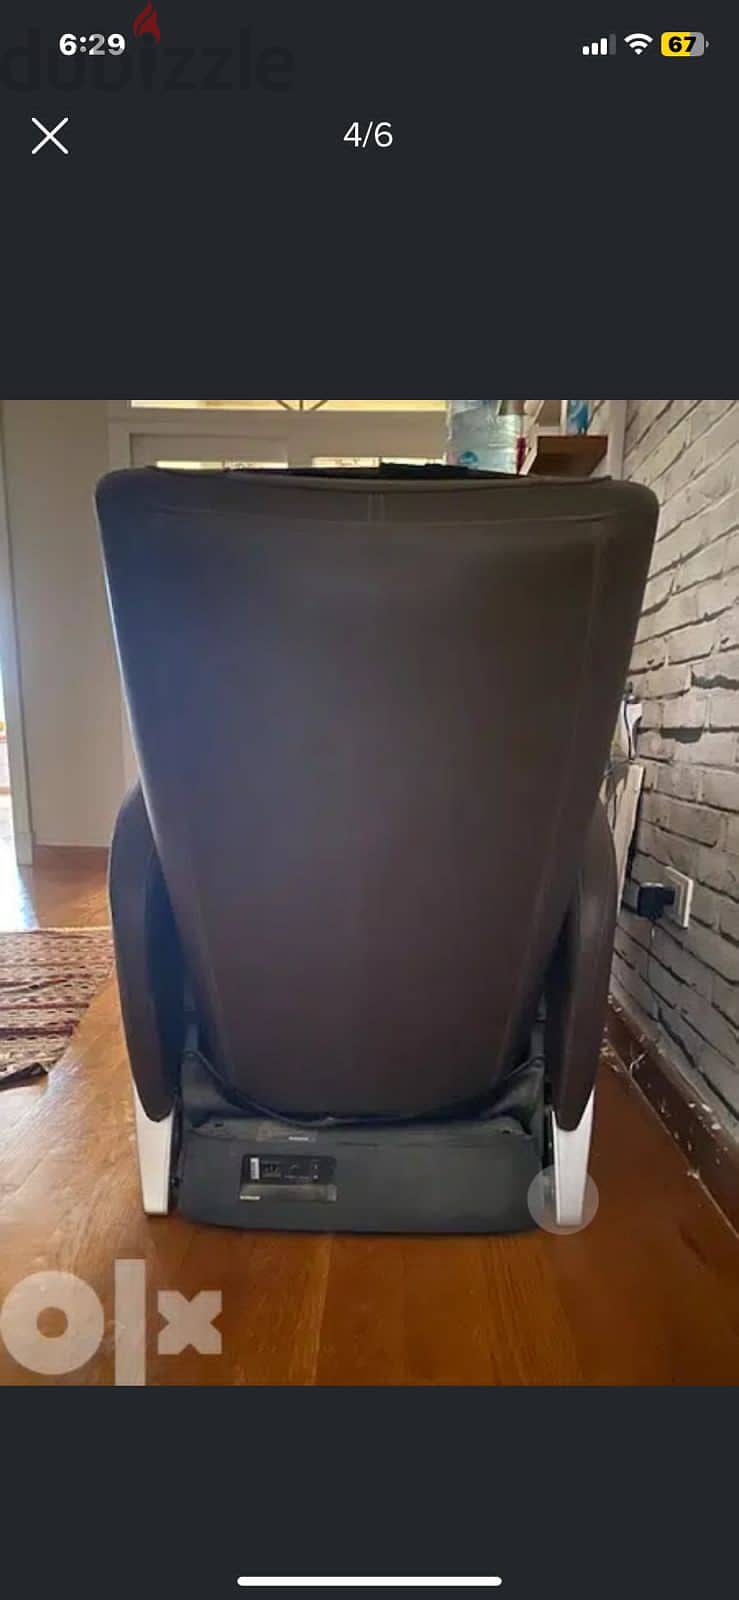 كرسي المساج الكهربائي ( ogawa massage chair) جيد جدا لاسترخاء الكتفين 3